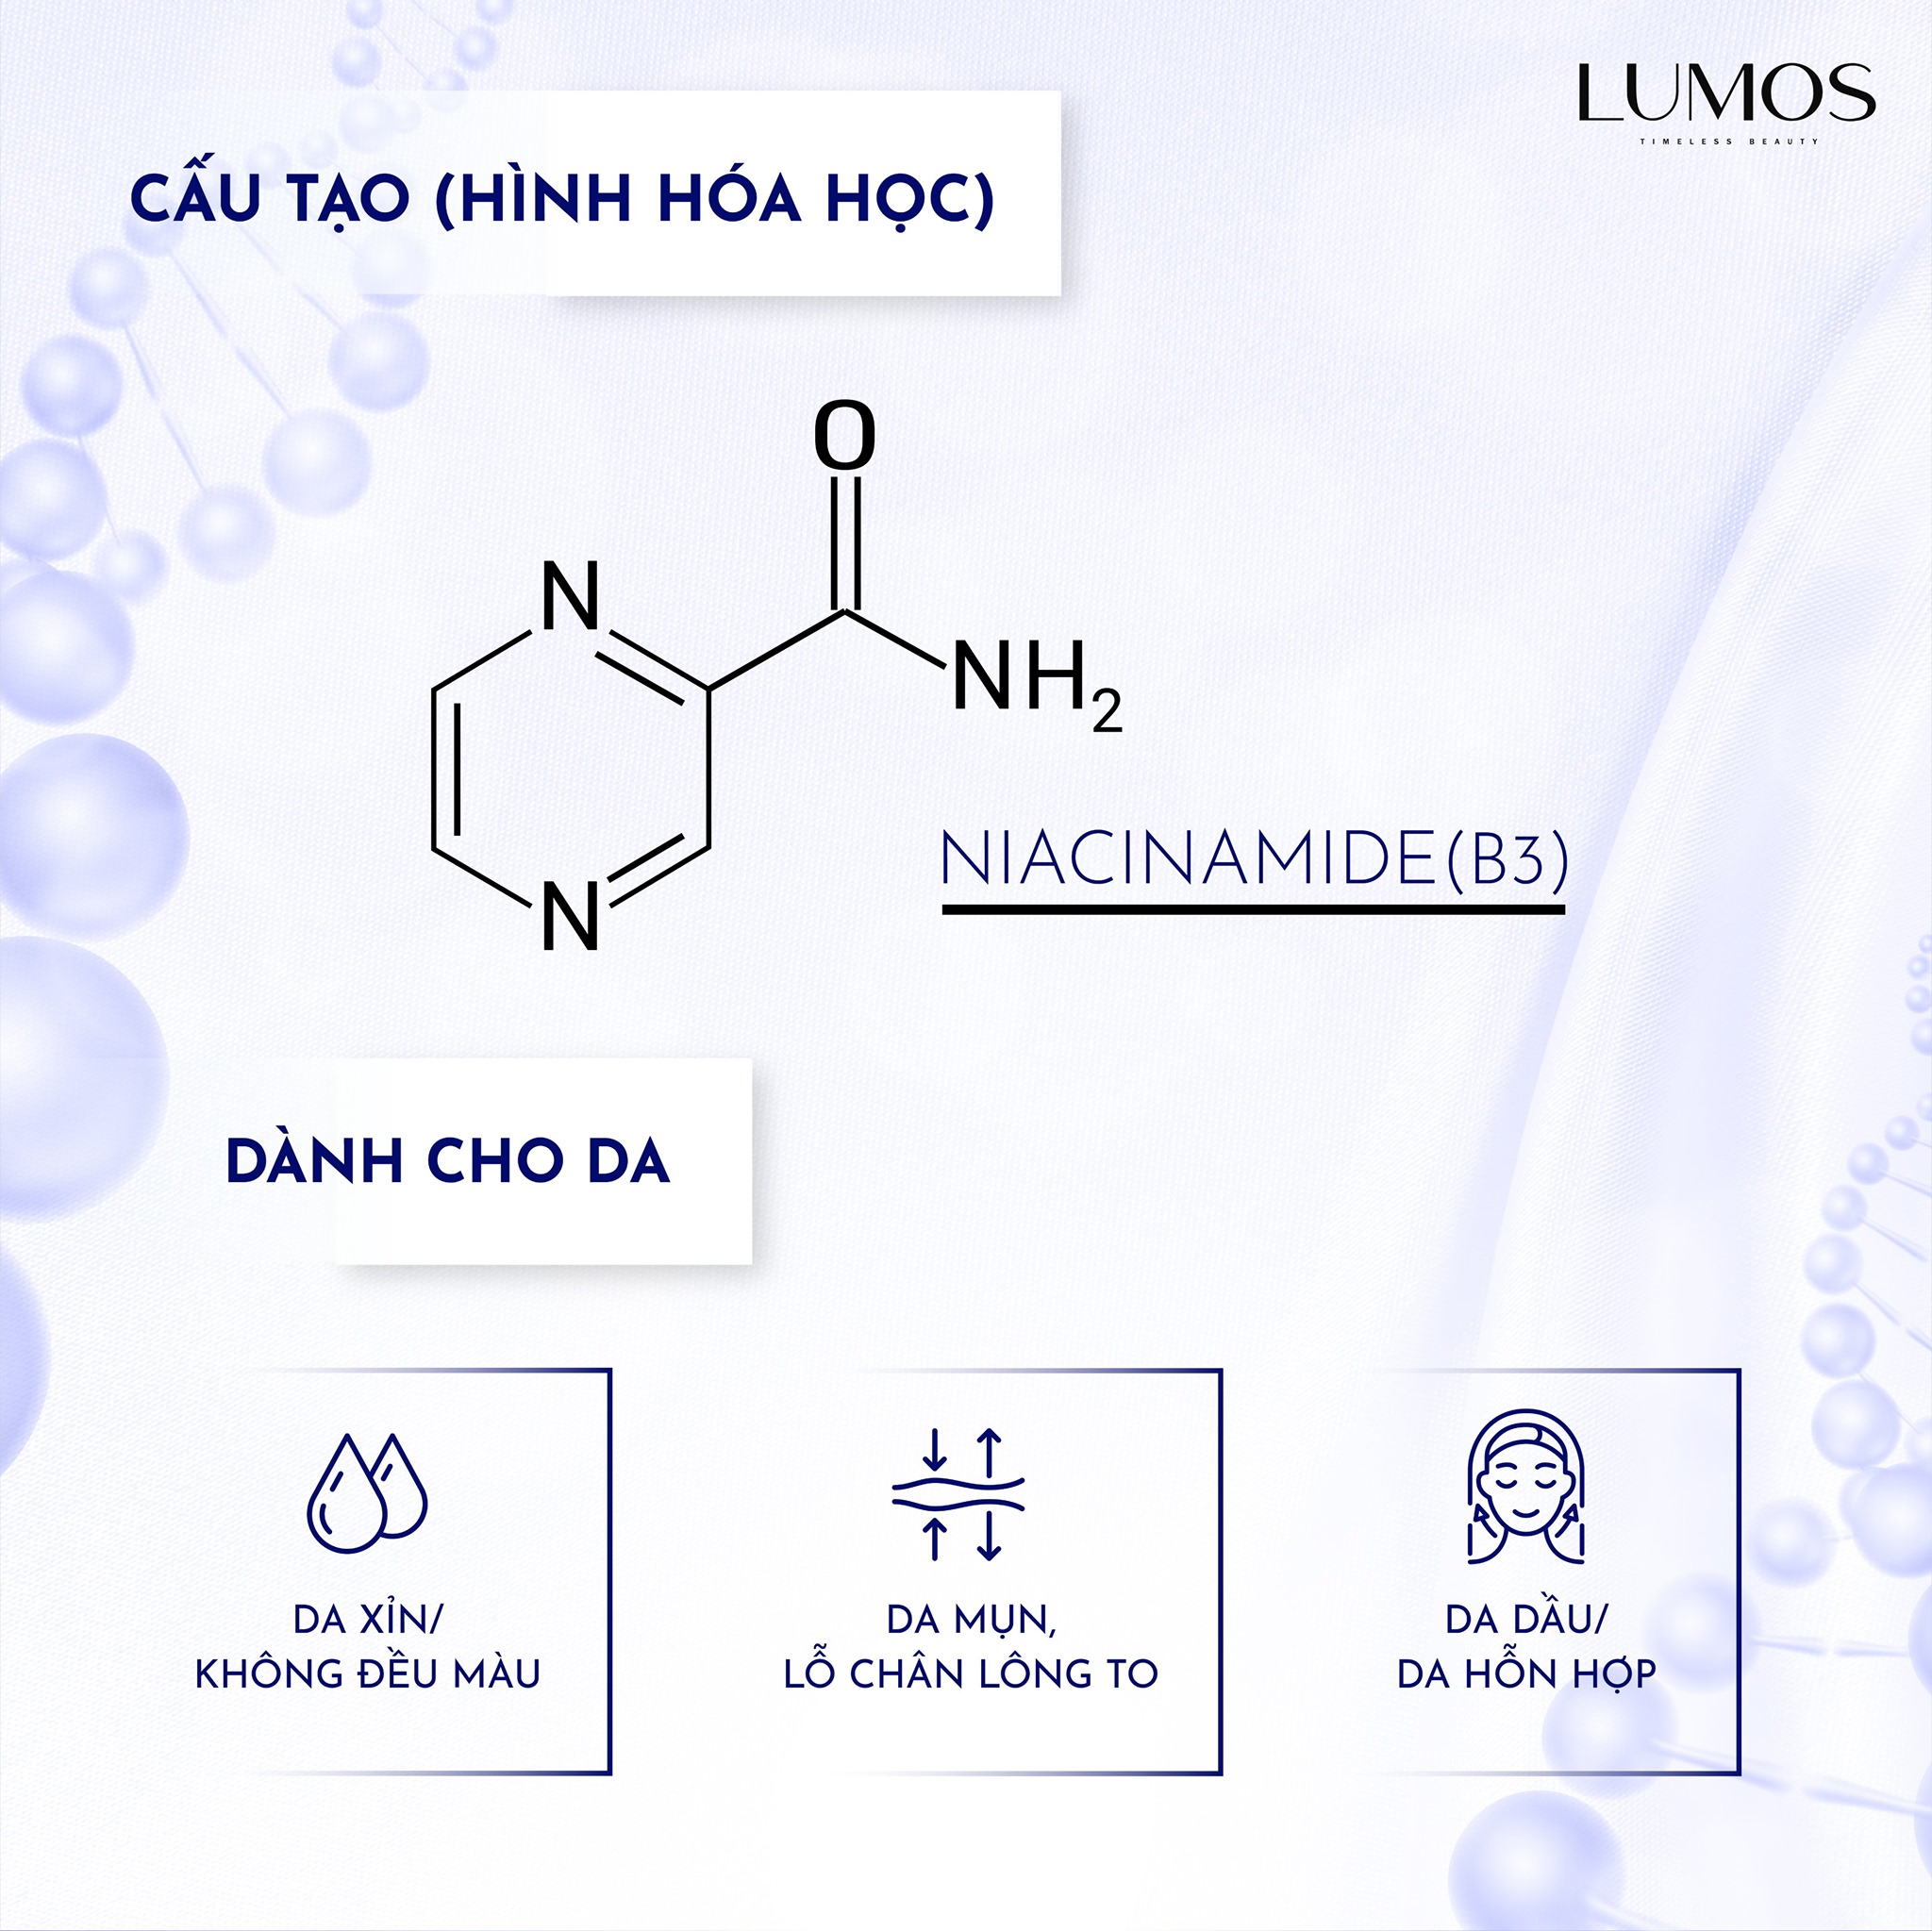 Niacinamide - Thành phần kết tinh nên bộ sản phẩm Lumos